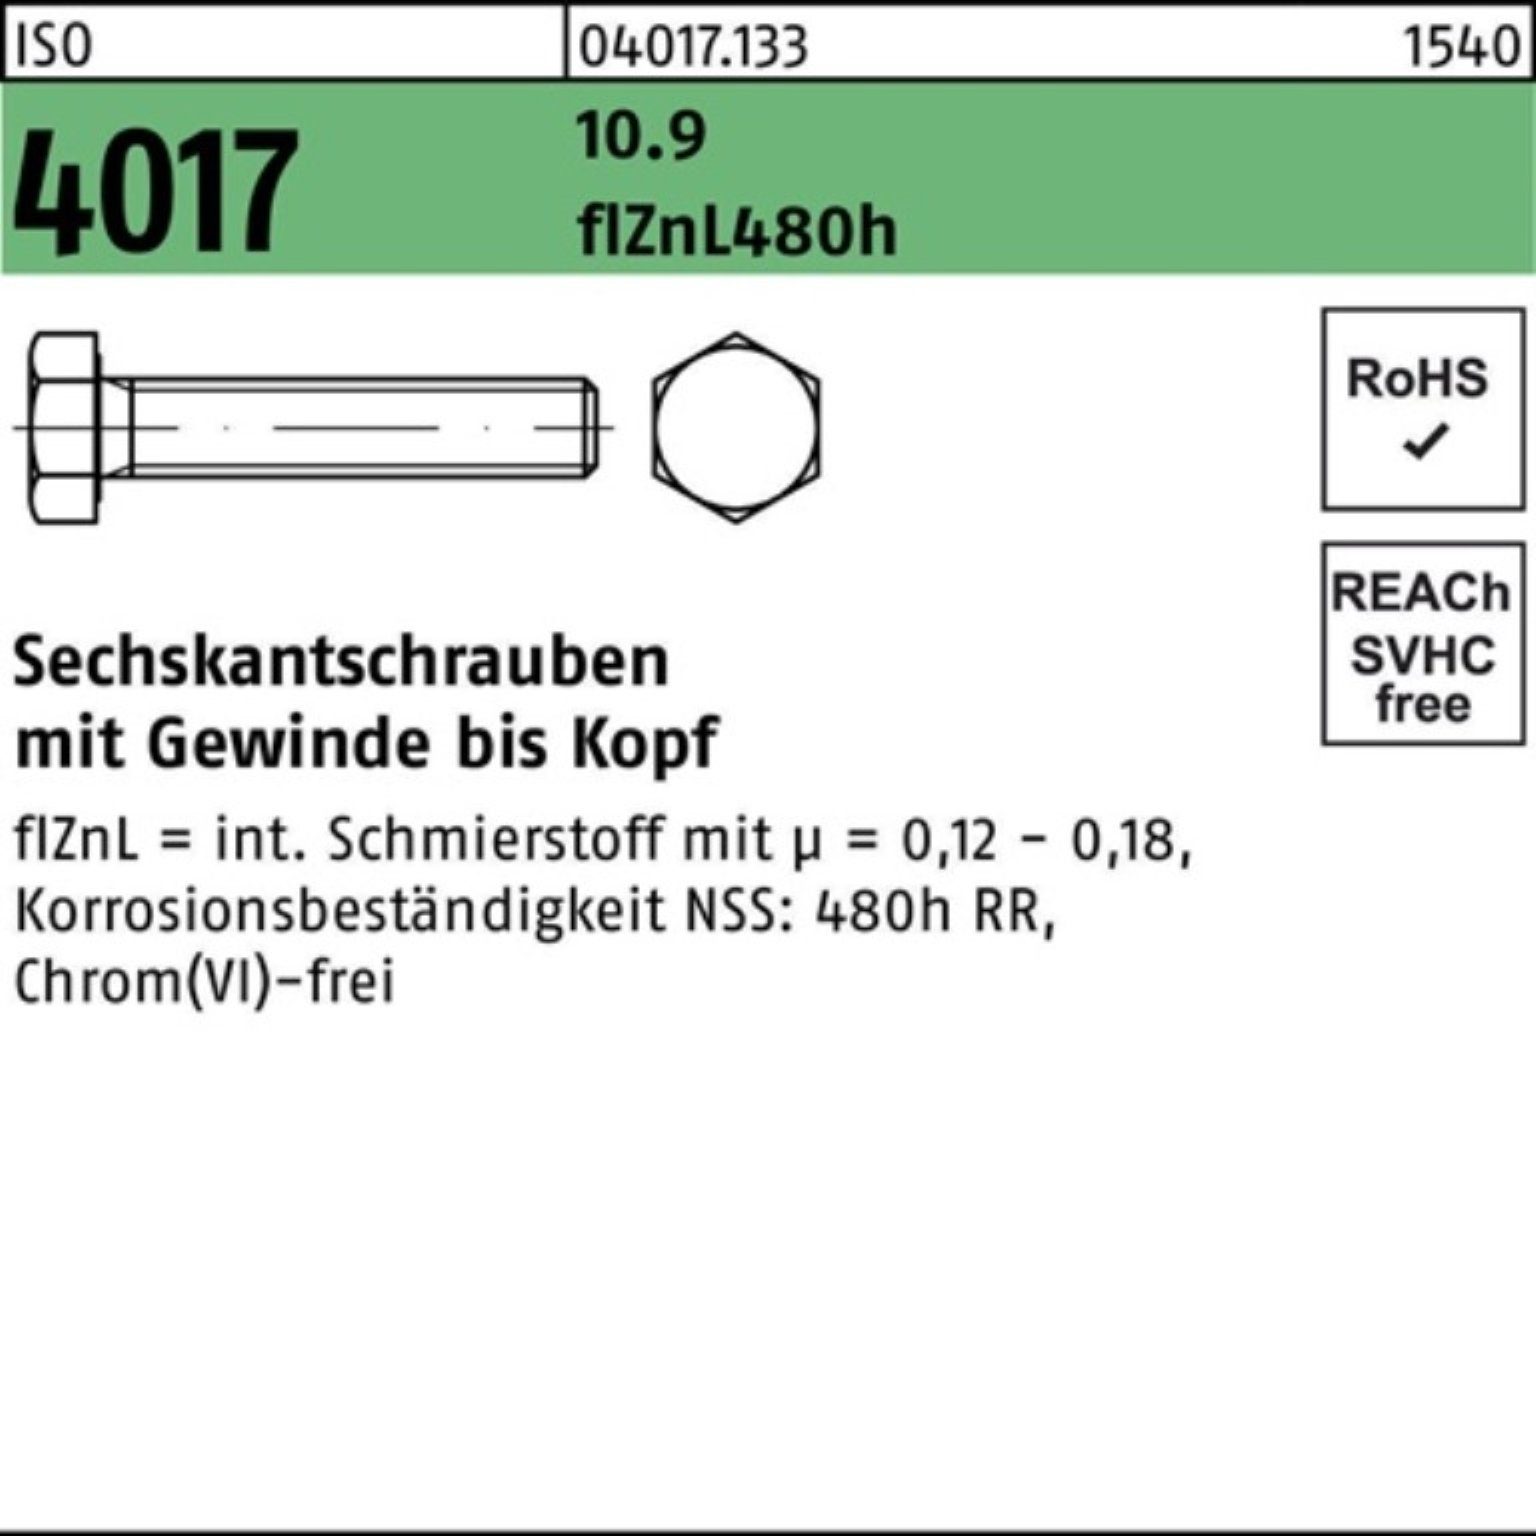 Pack Sechskantschraube Bufab VG ISO 20 200er 45 4017 zinklamellenb. 10.9 M6x Sechskantschraube